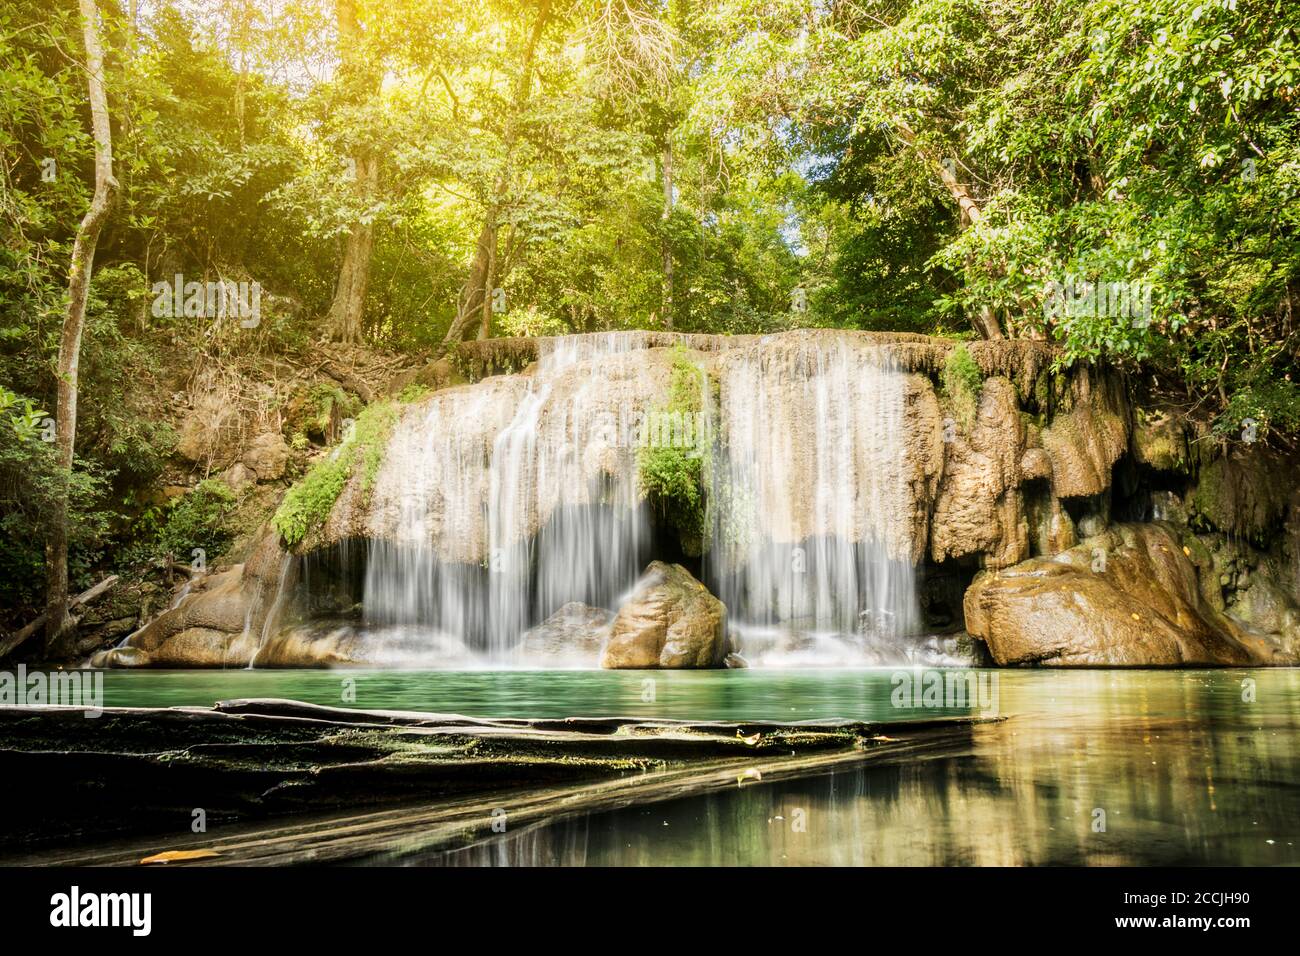 Photo de paysage, chute d'eau d'Erawan, belle cascade dans la forêt tropicale à la province de Kanchanaburi, Thaïlande Banque D'Images